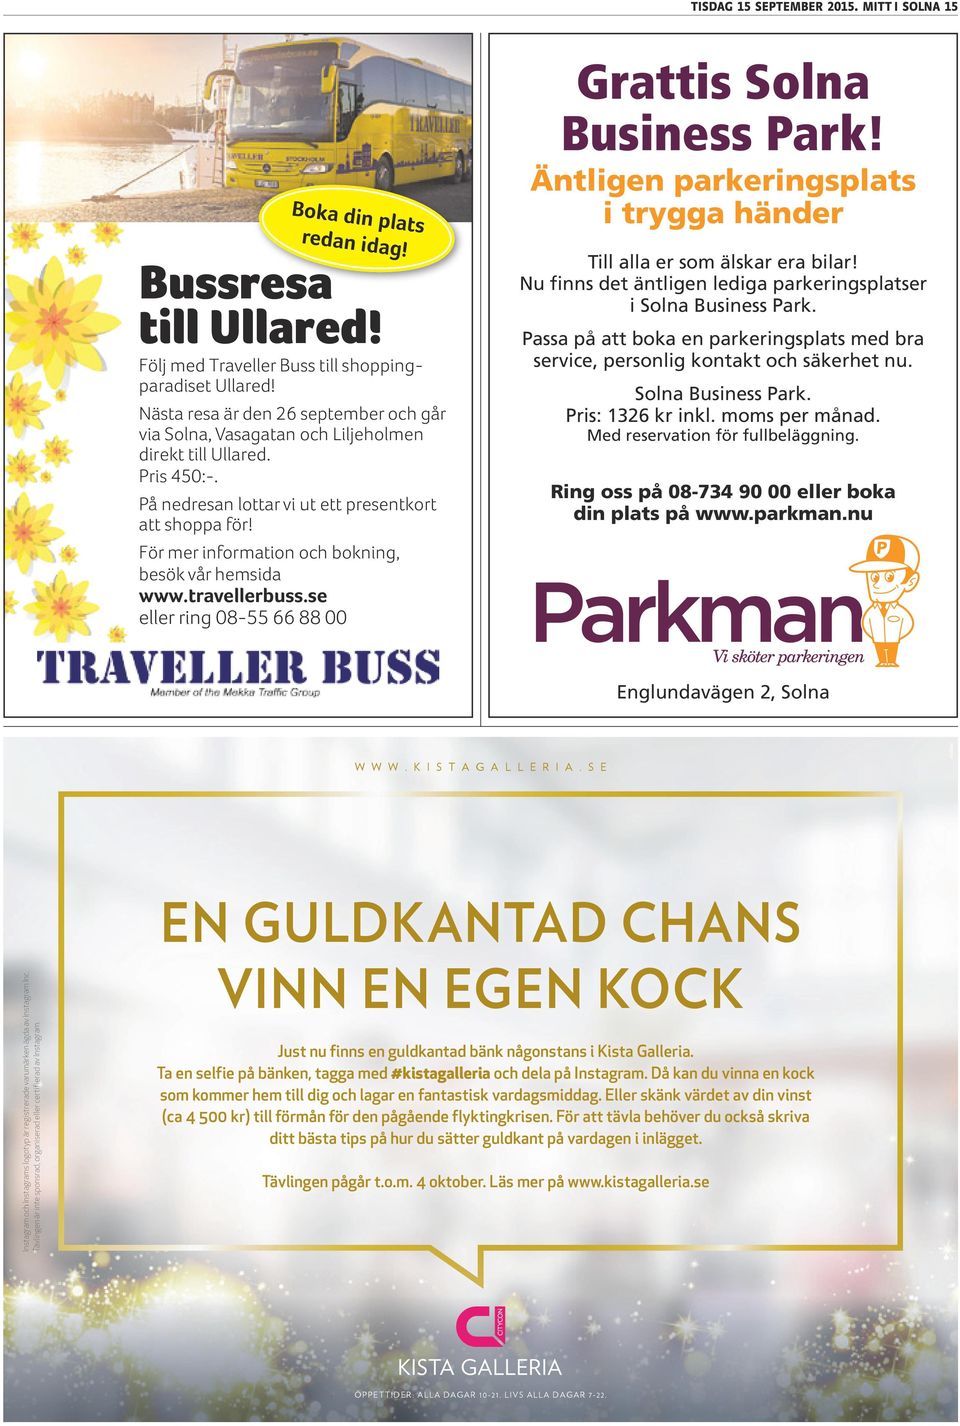 För mer information och bokning, besök vår hemsida www.travellerbuss.se eller ring 08-55 66 88 00 Grattis Solna Business Park!